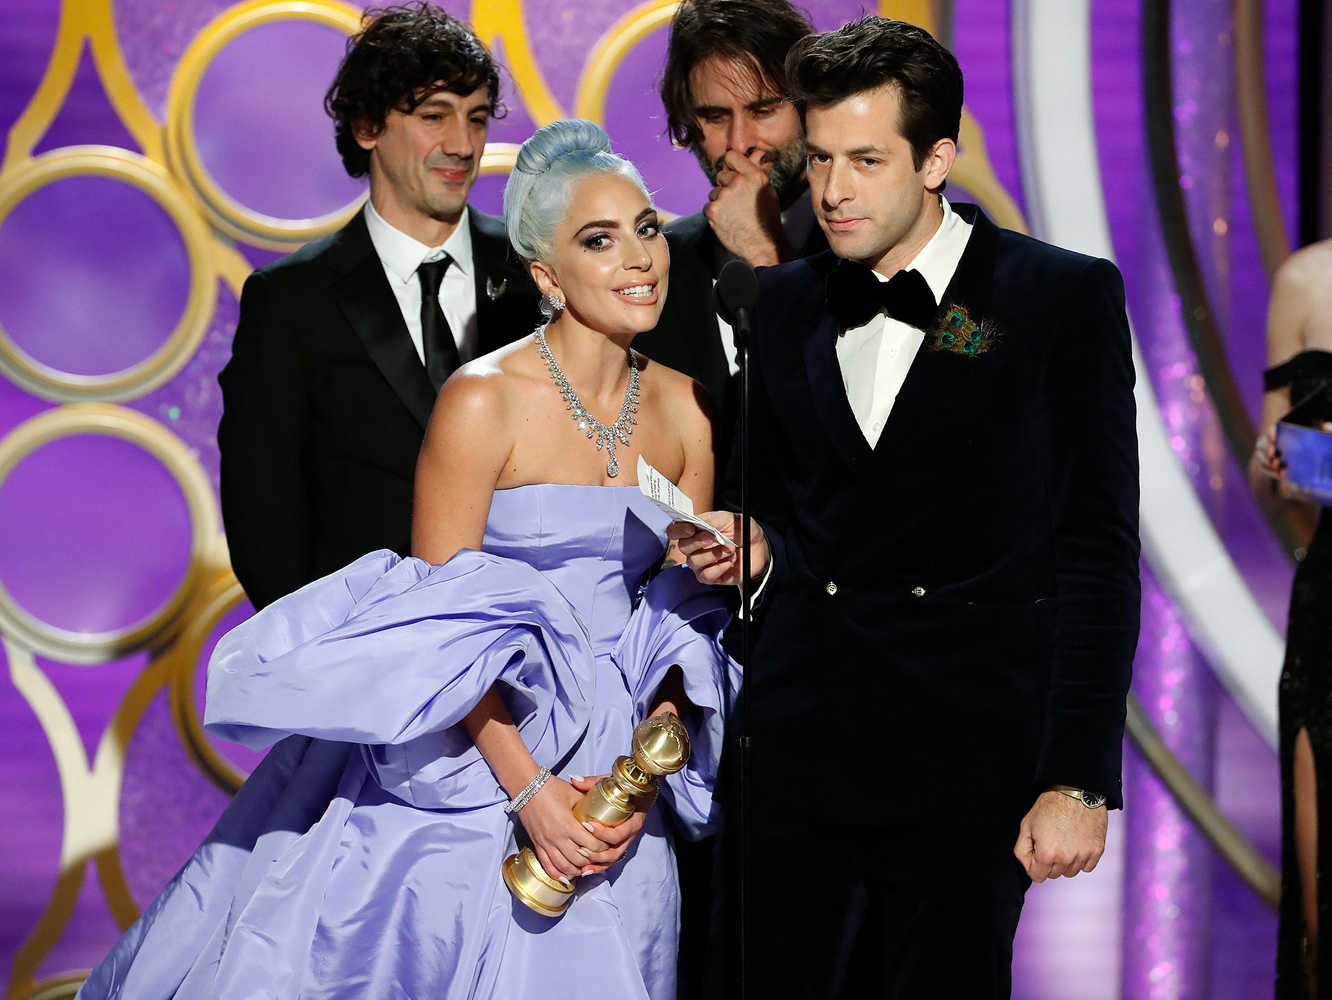  Globos De Oro 2019 | Lady Gaga se conforma con la Mejor Canción en la noche de ‘Bohemian Rhapsody’